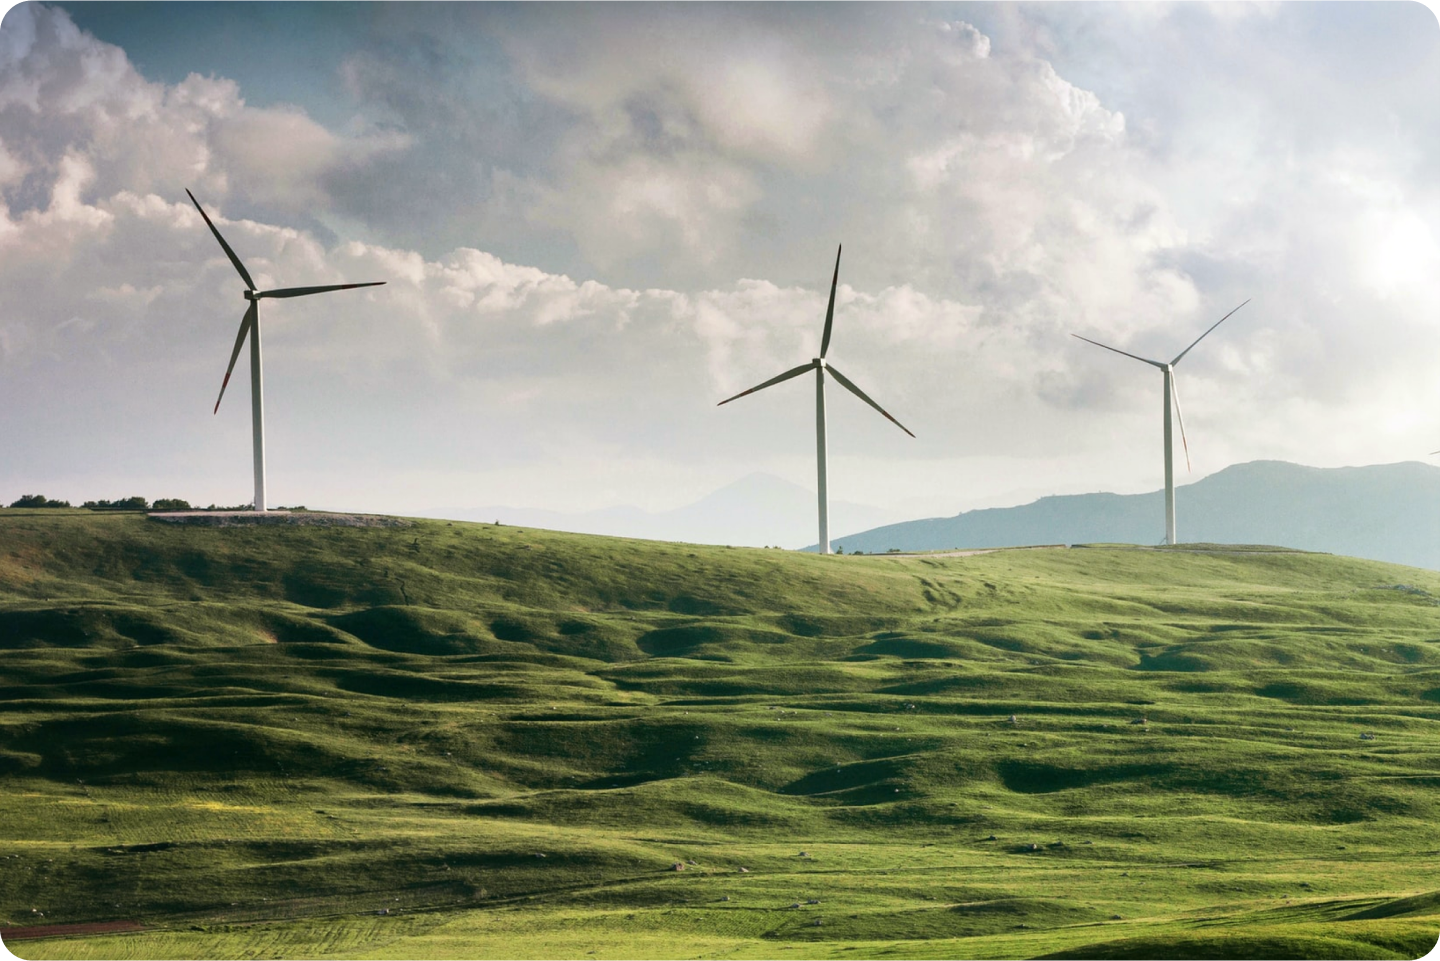 Três grandes turbinas eólicas no alto de uma colina com grama.